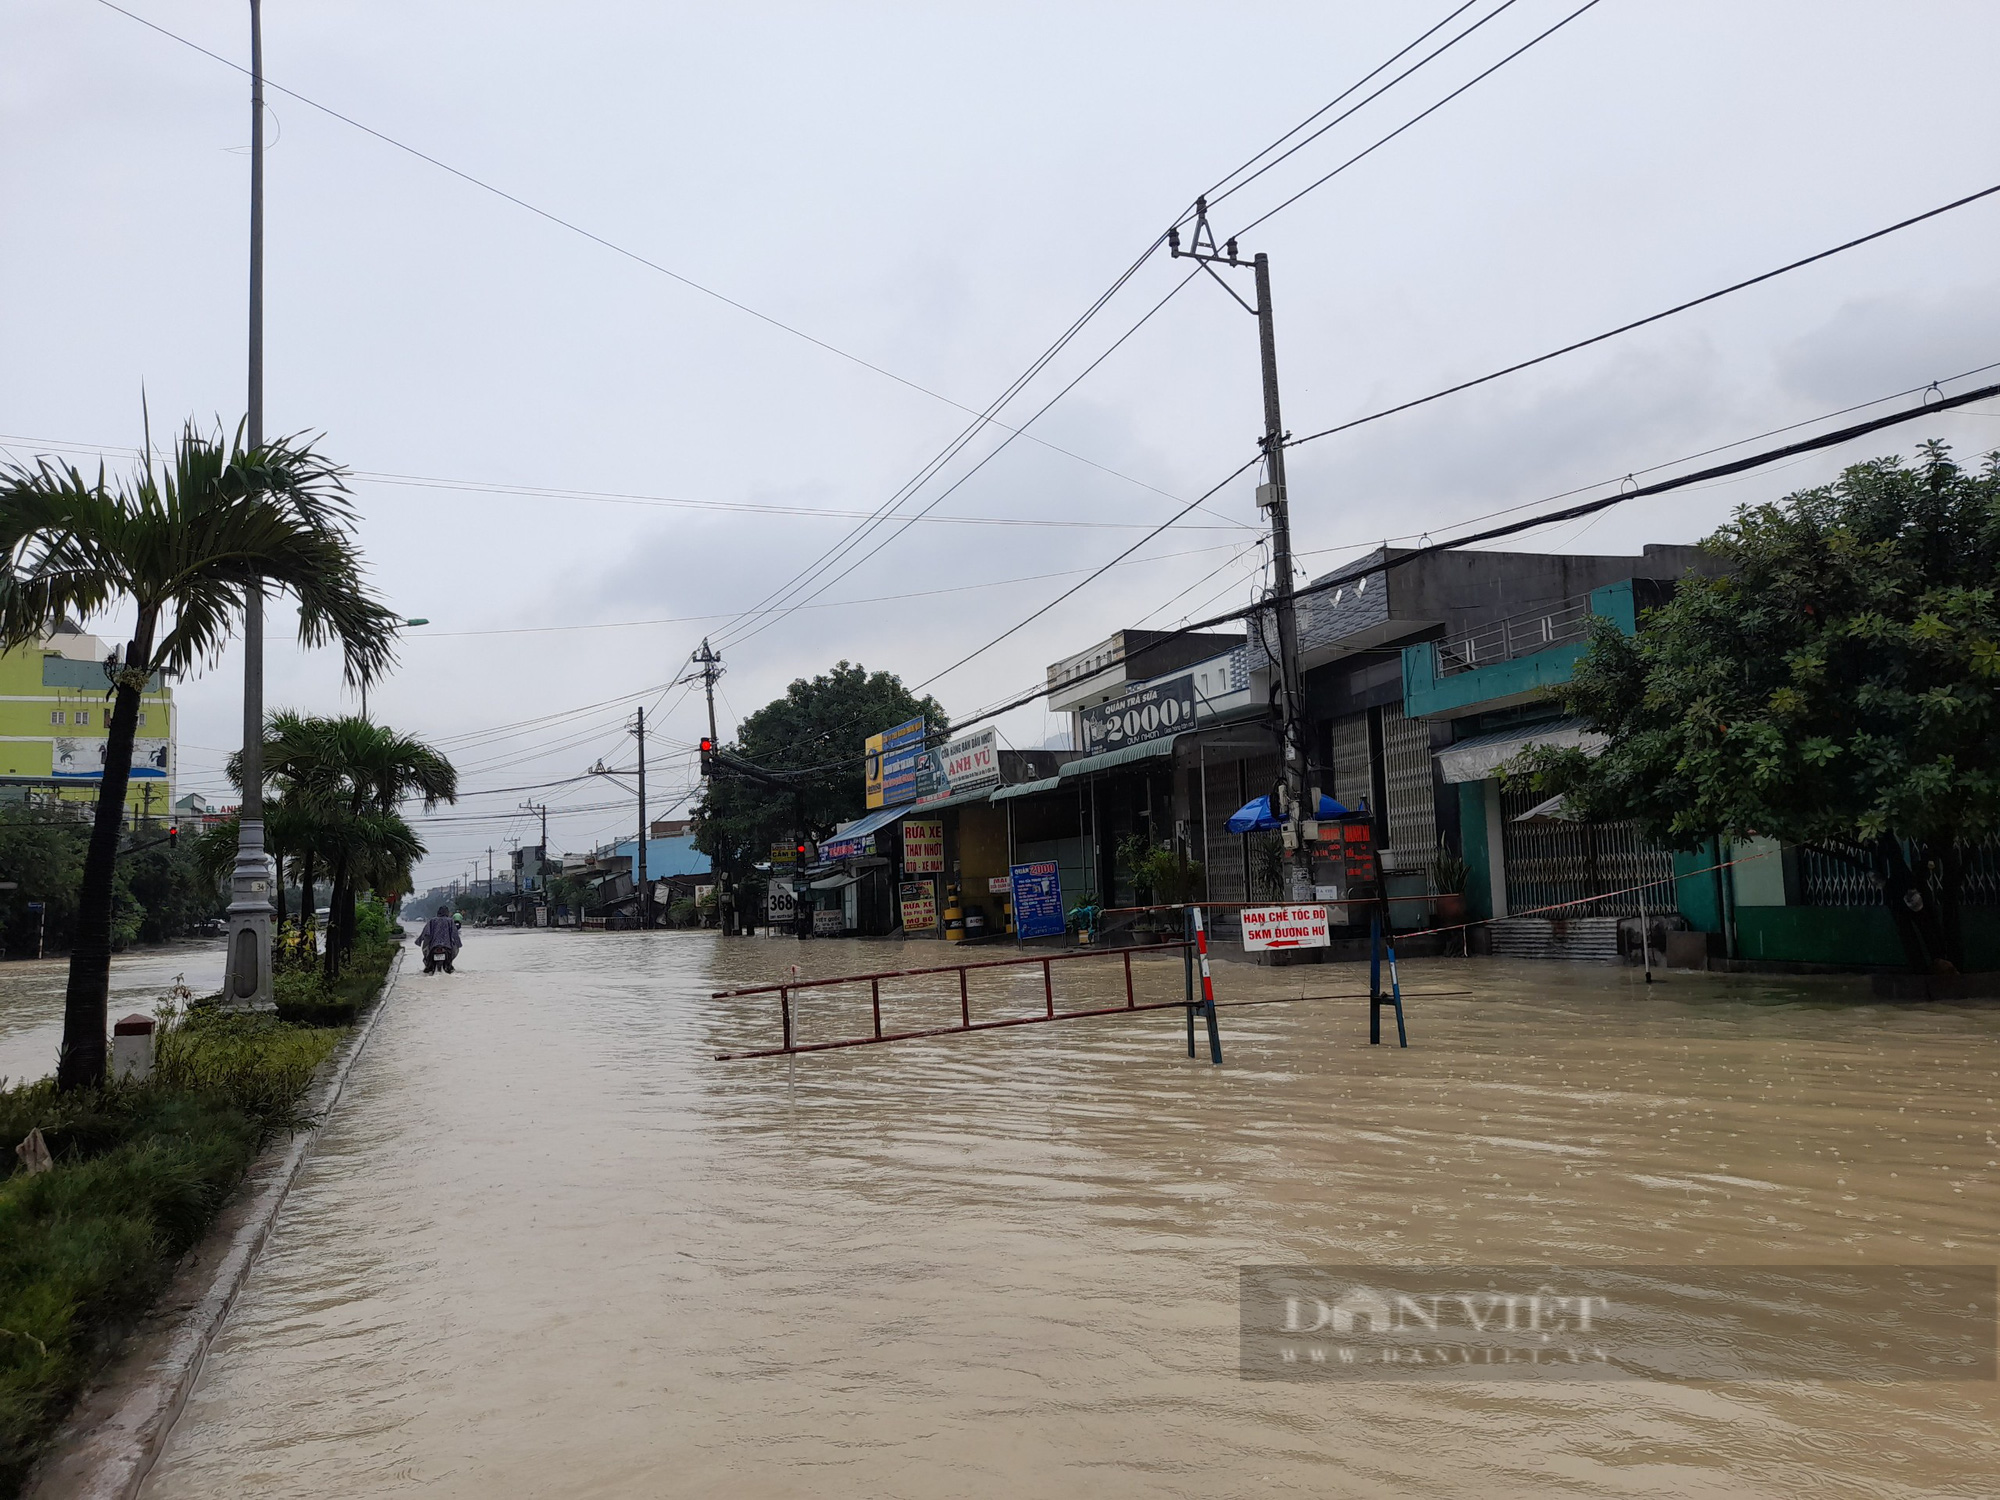 Bình Định: Quốc lộ 1 ngập nước, mố cầu Ngô La sạt lở gây chia cắt nhiều giờ ở huyện miền núi - Ảnh 9.